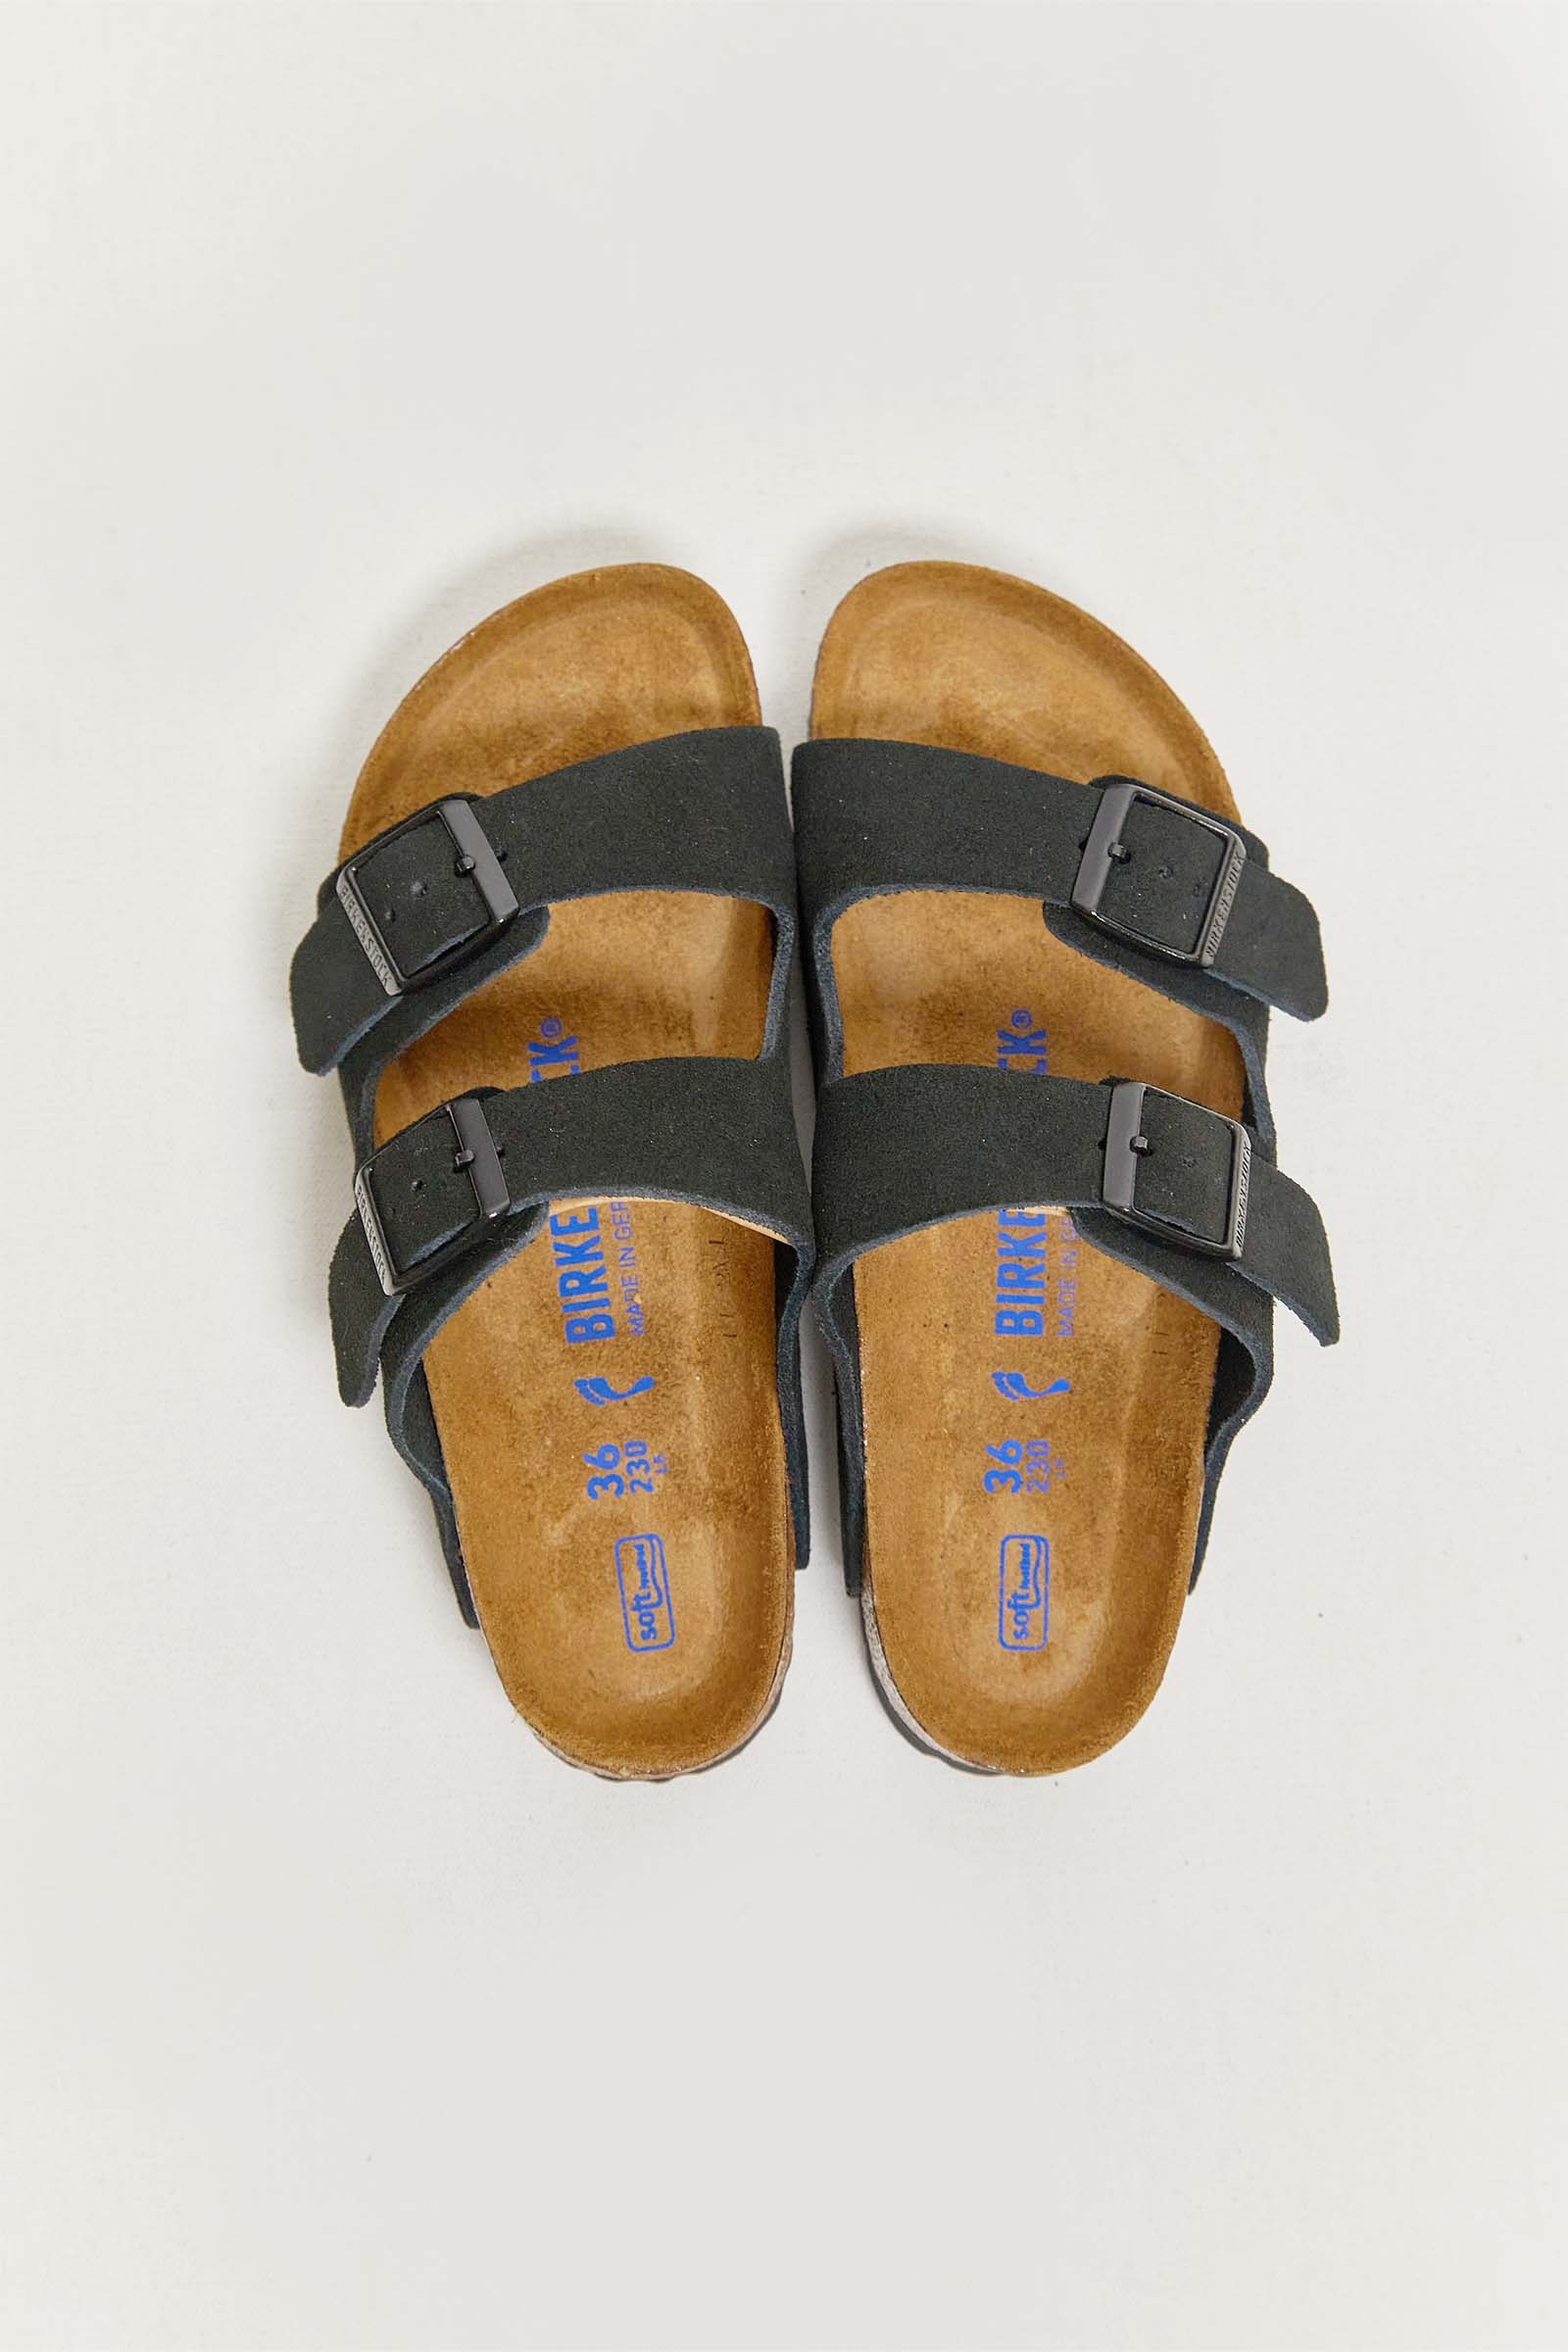 birkenstock arizona suede leather sandals.